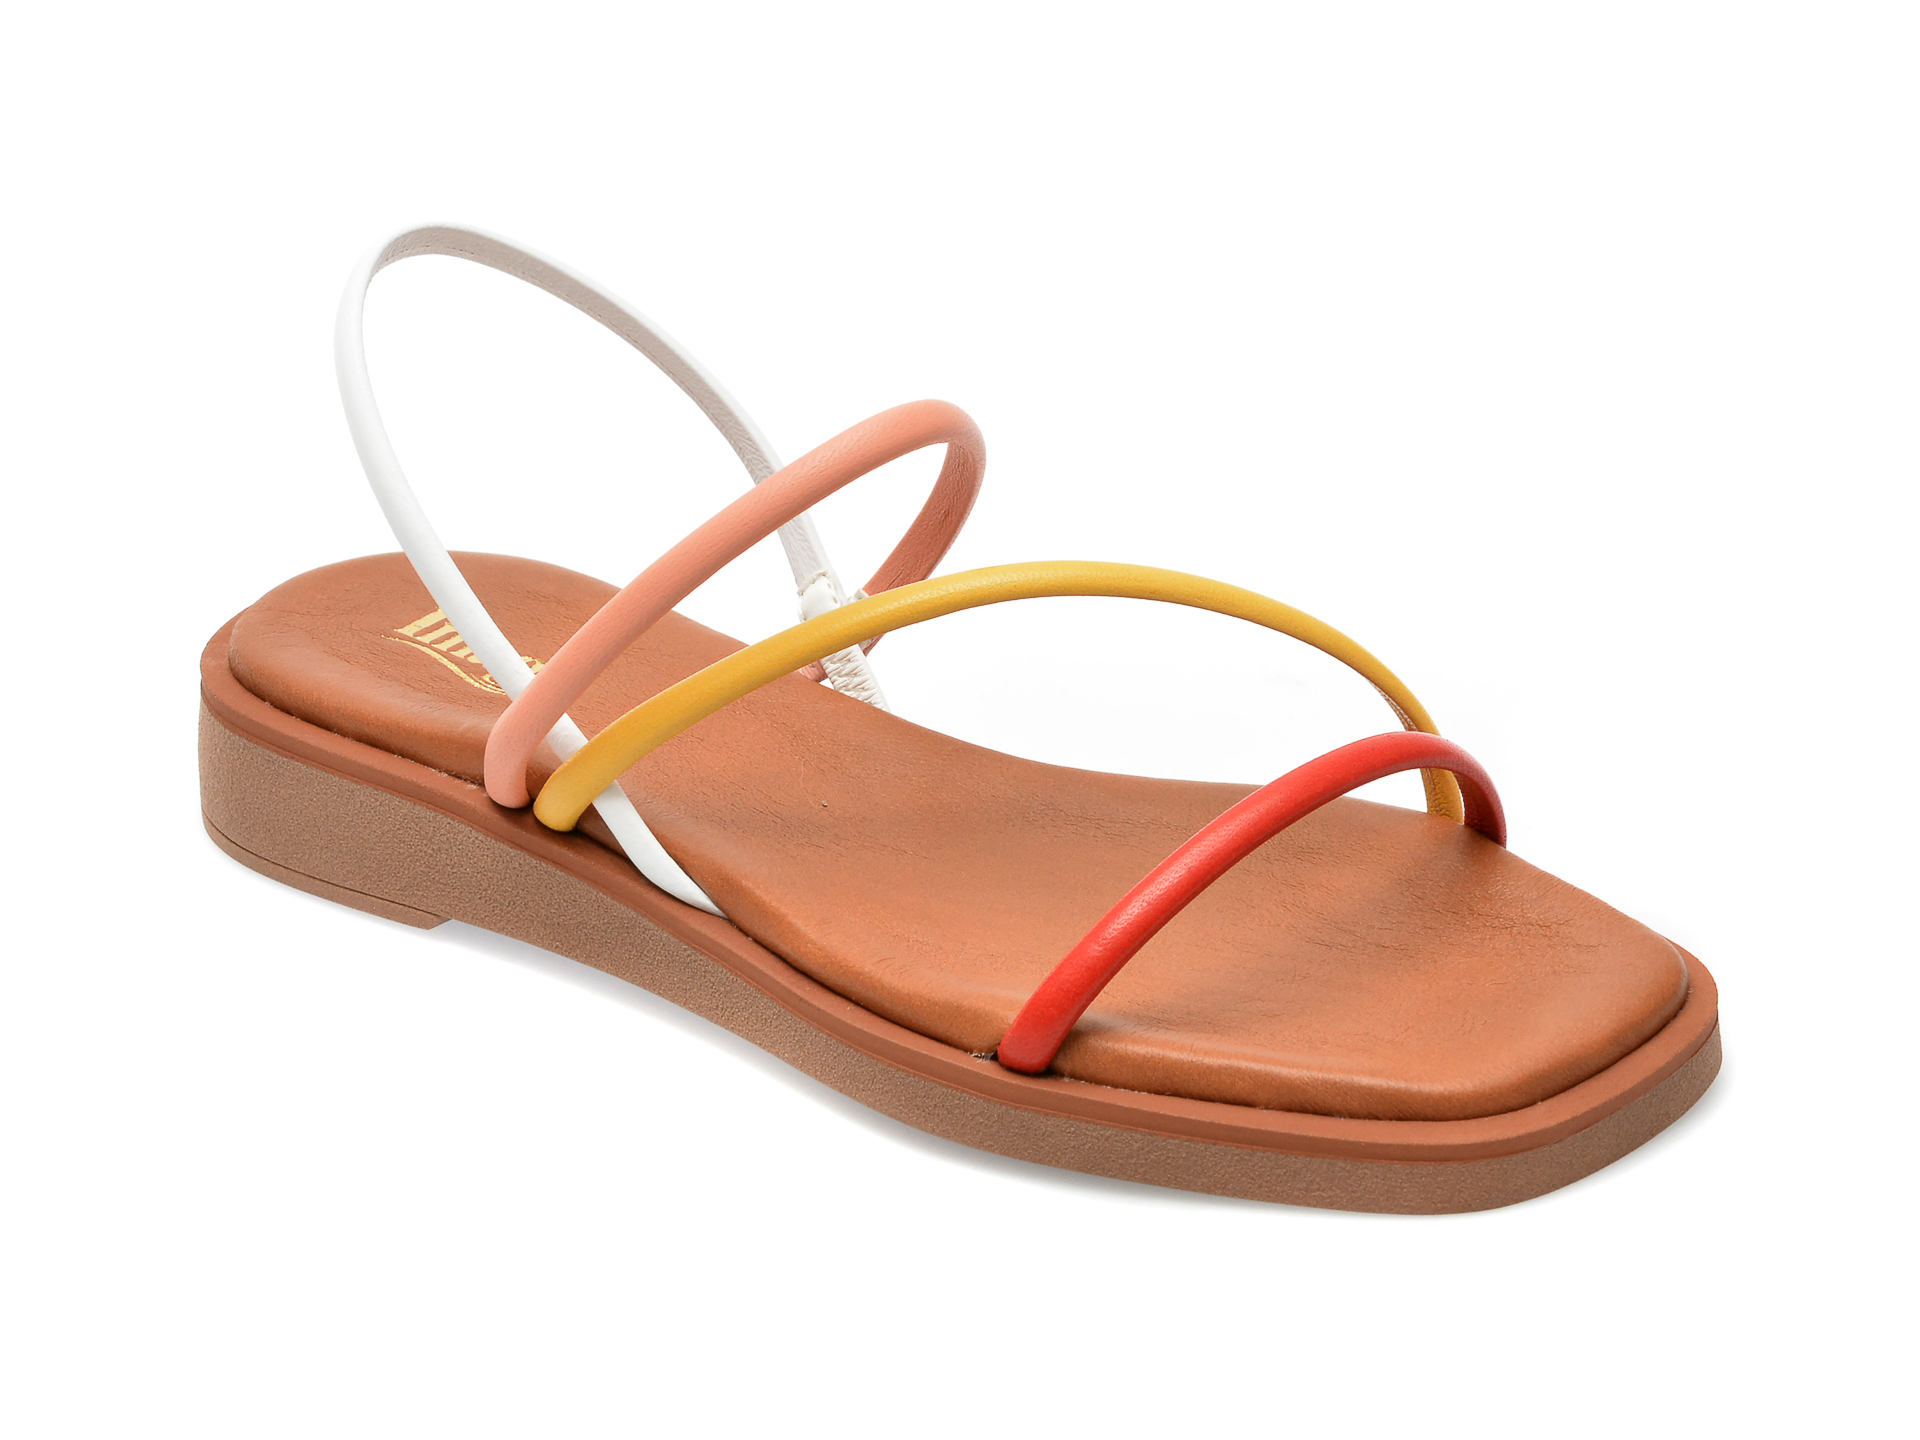 Sandale IMAGE multicolor, CAMILA, din piele naturala /sale